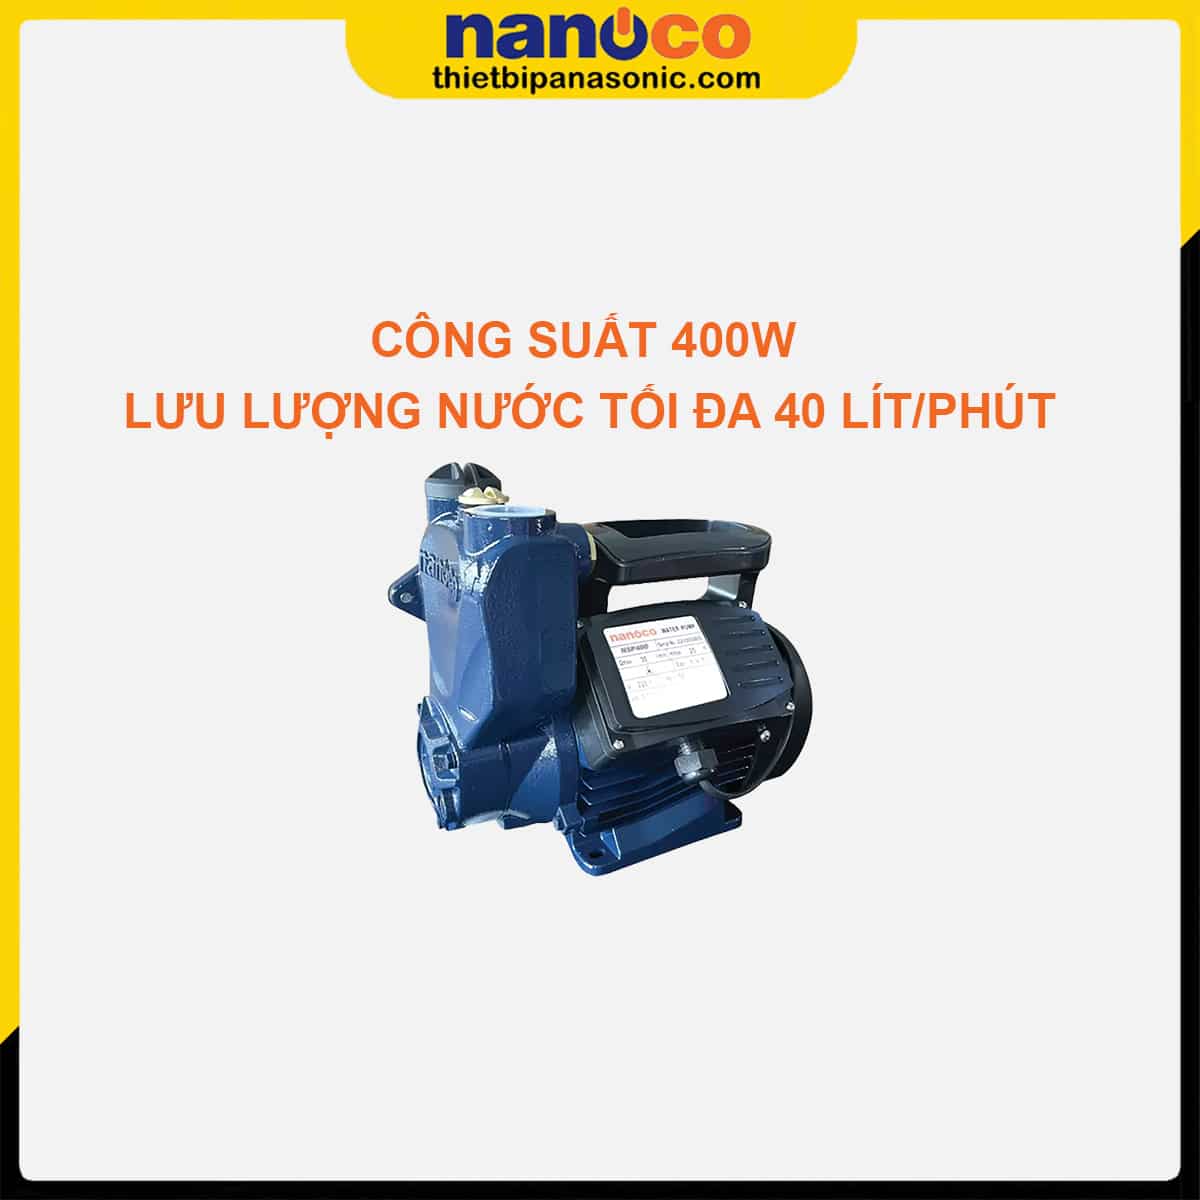 Máy bơm đẩy cao Nanoco NSP400 có công suất 400W cùng lưu lượng nước đặt 40 lít/phút